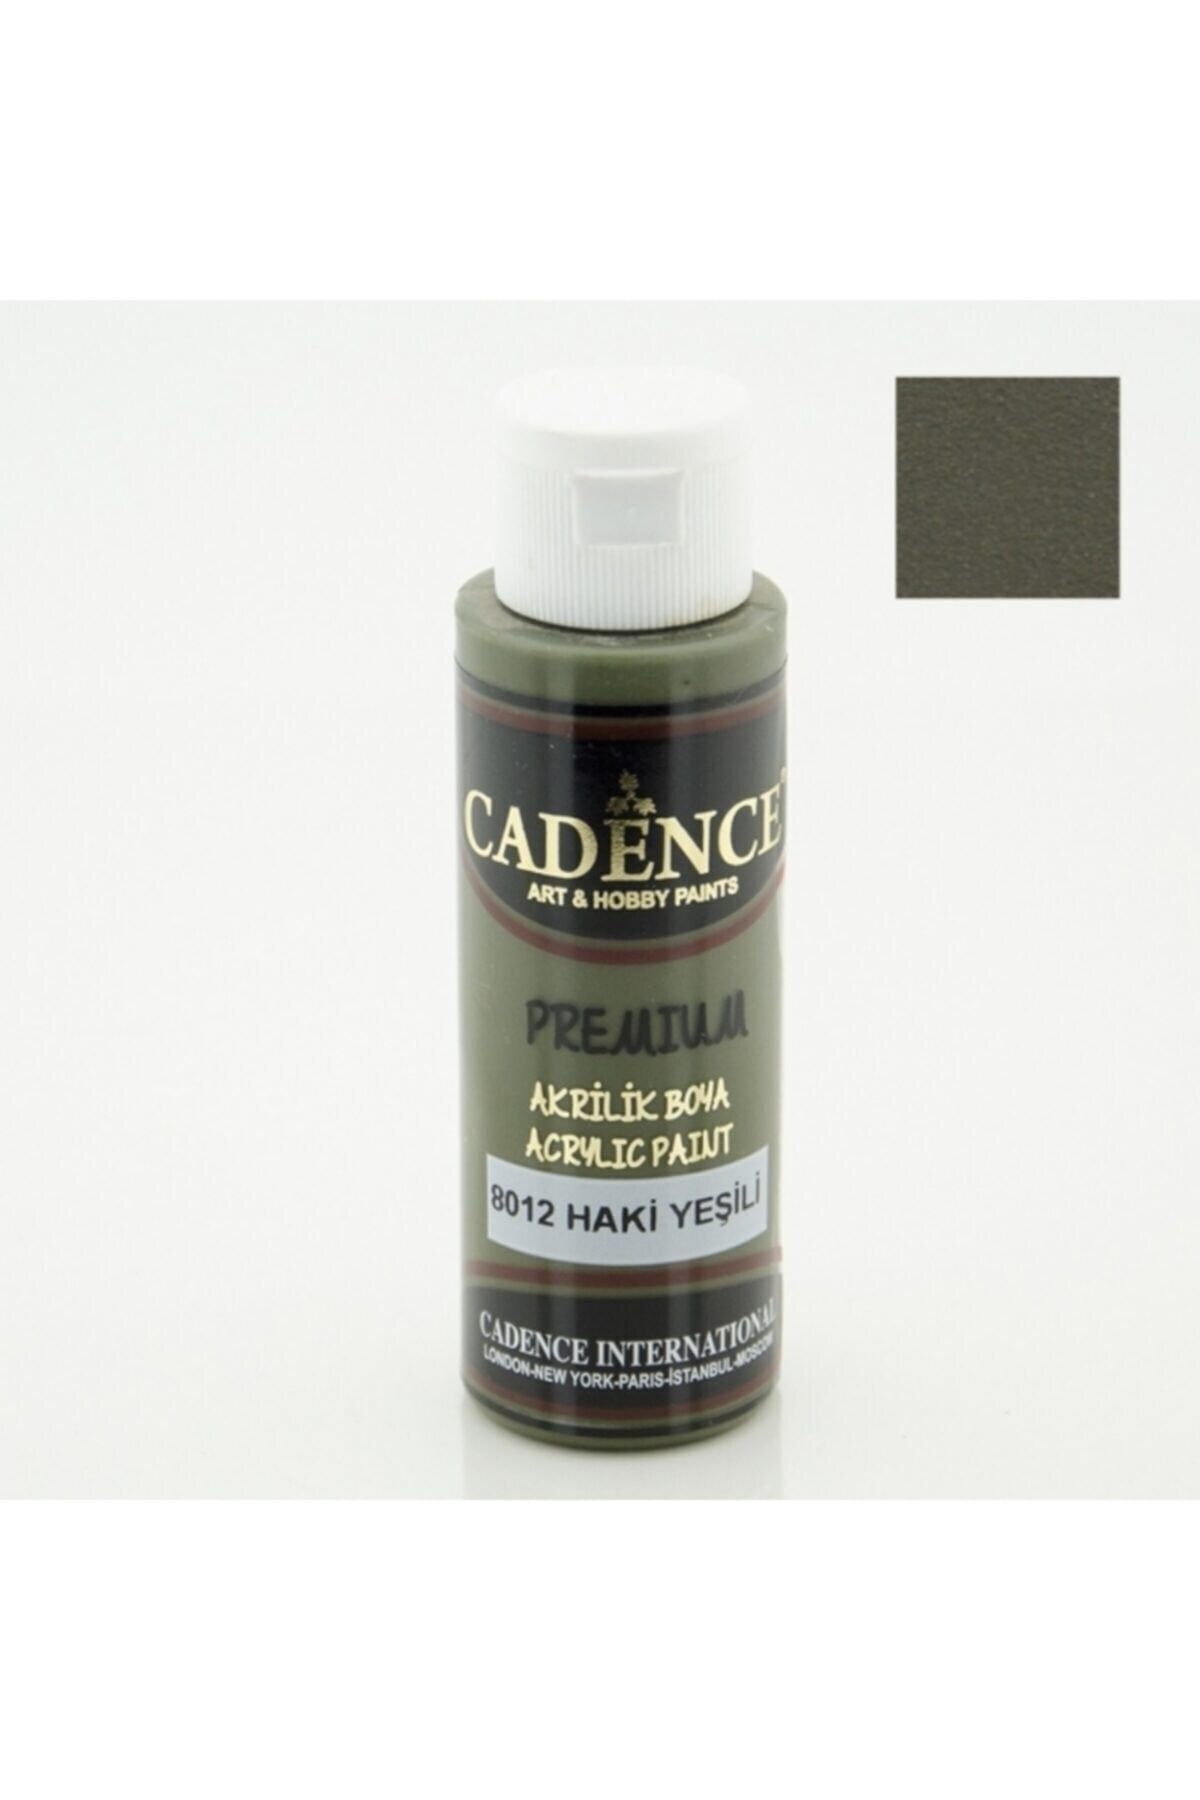 Cadence Boya 8012 Haki Yeşili - Premium Akrilik 70ml